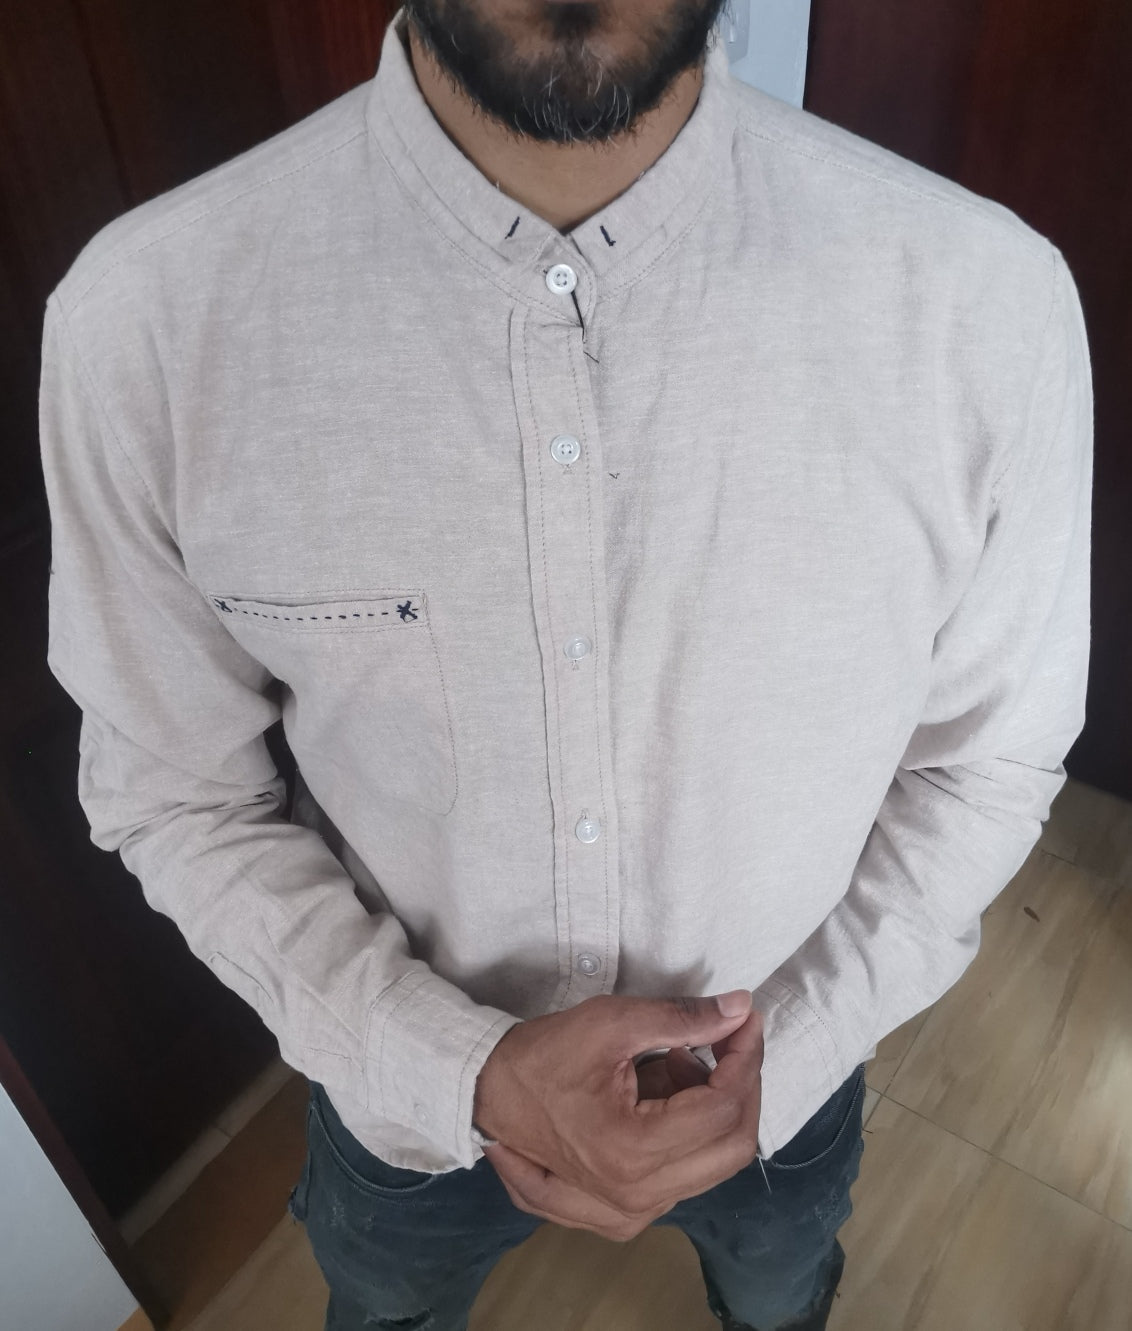 Linen shirt cuff collar